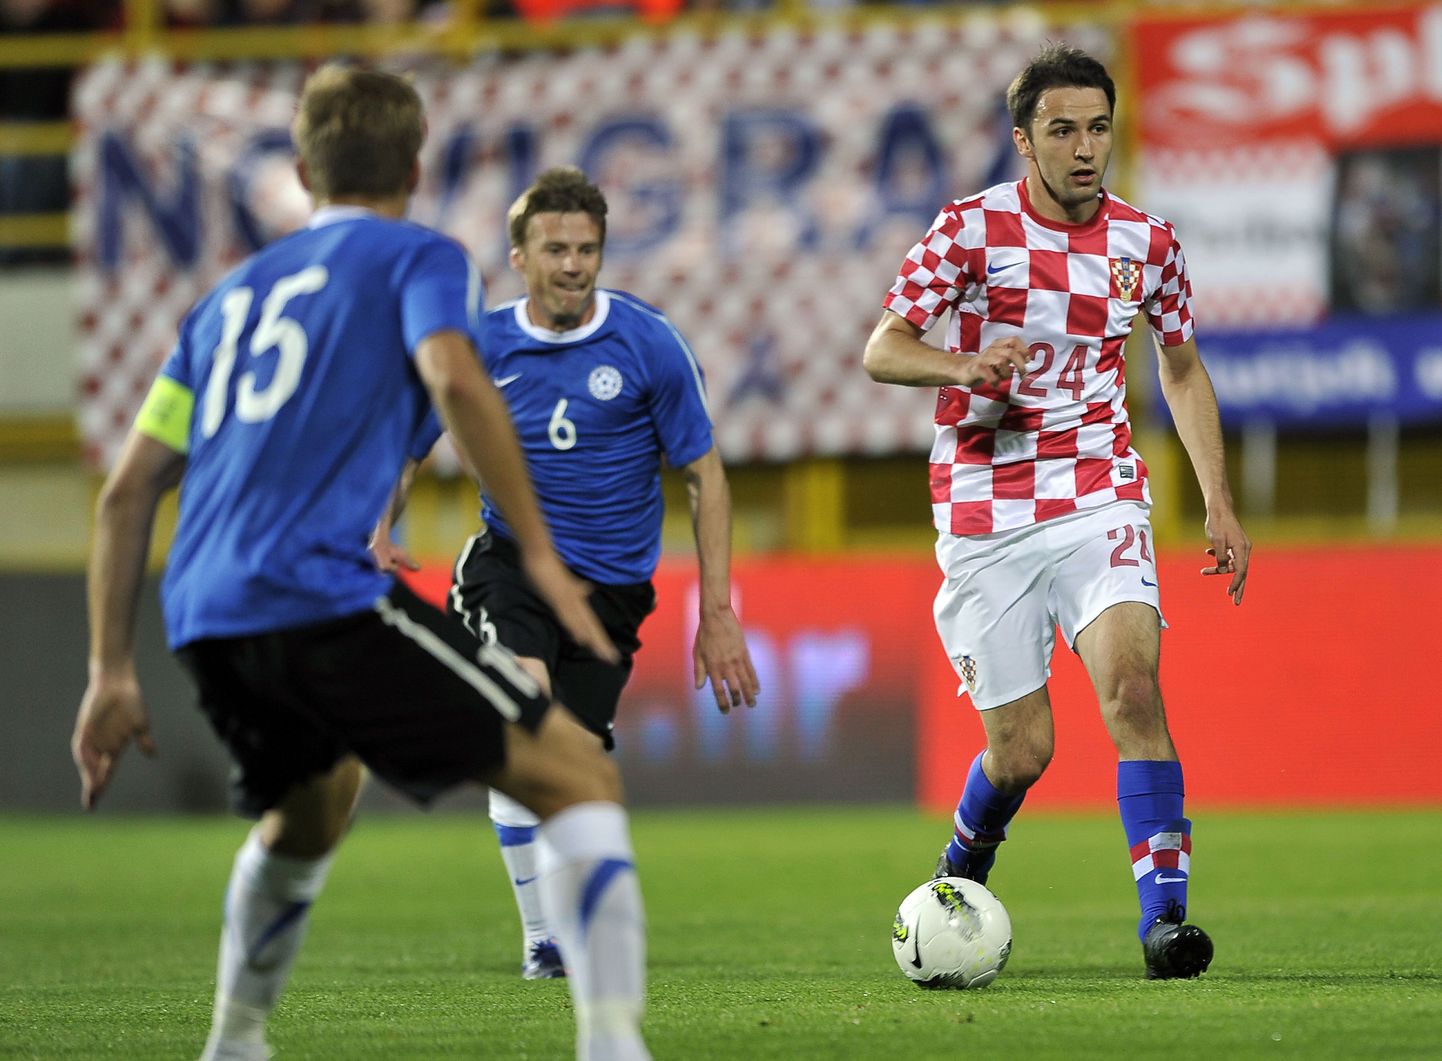 Eesti koondis kohtus Horvaatiaga viimati 2012. aasta sõprusmängus ja siis jäädi vastasele võõrsil 3:1 alla.